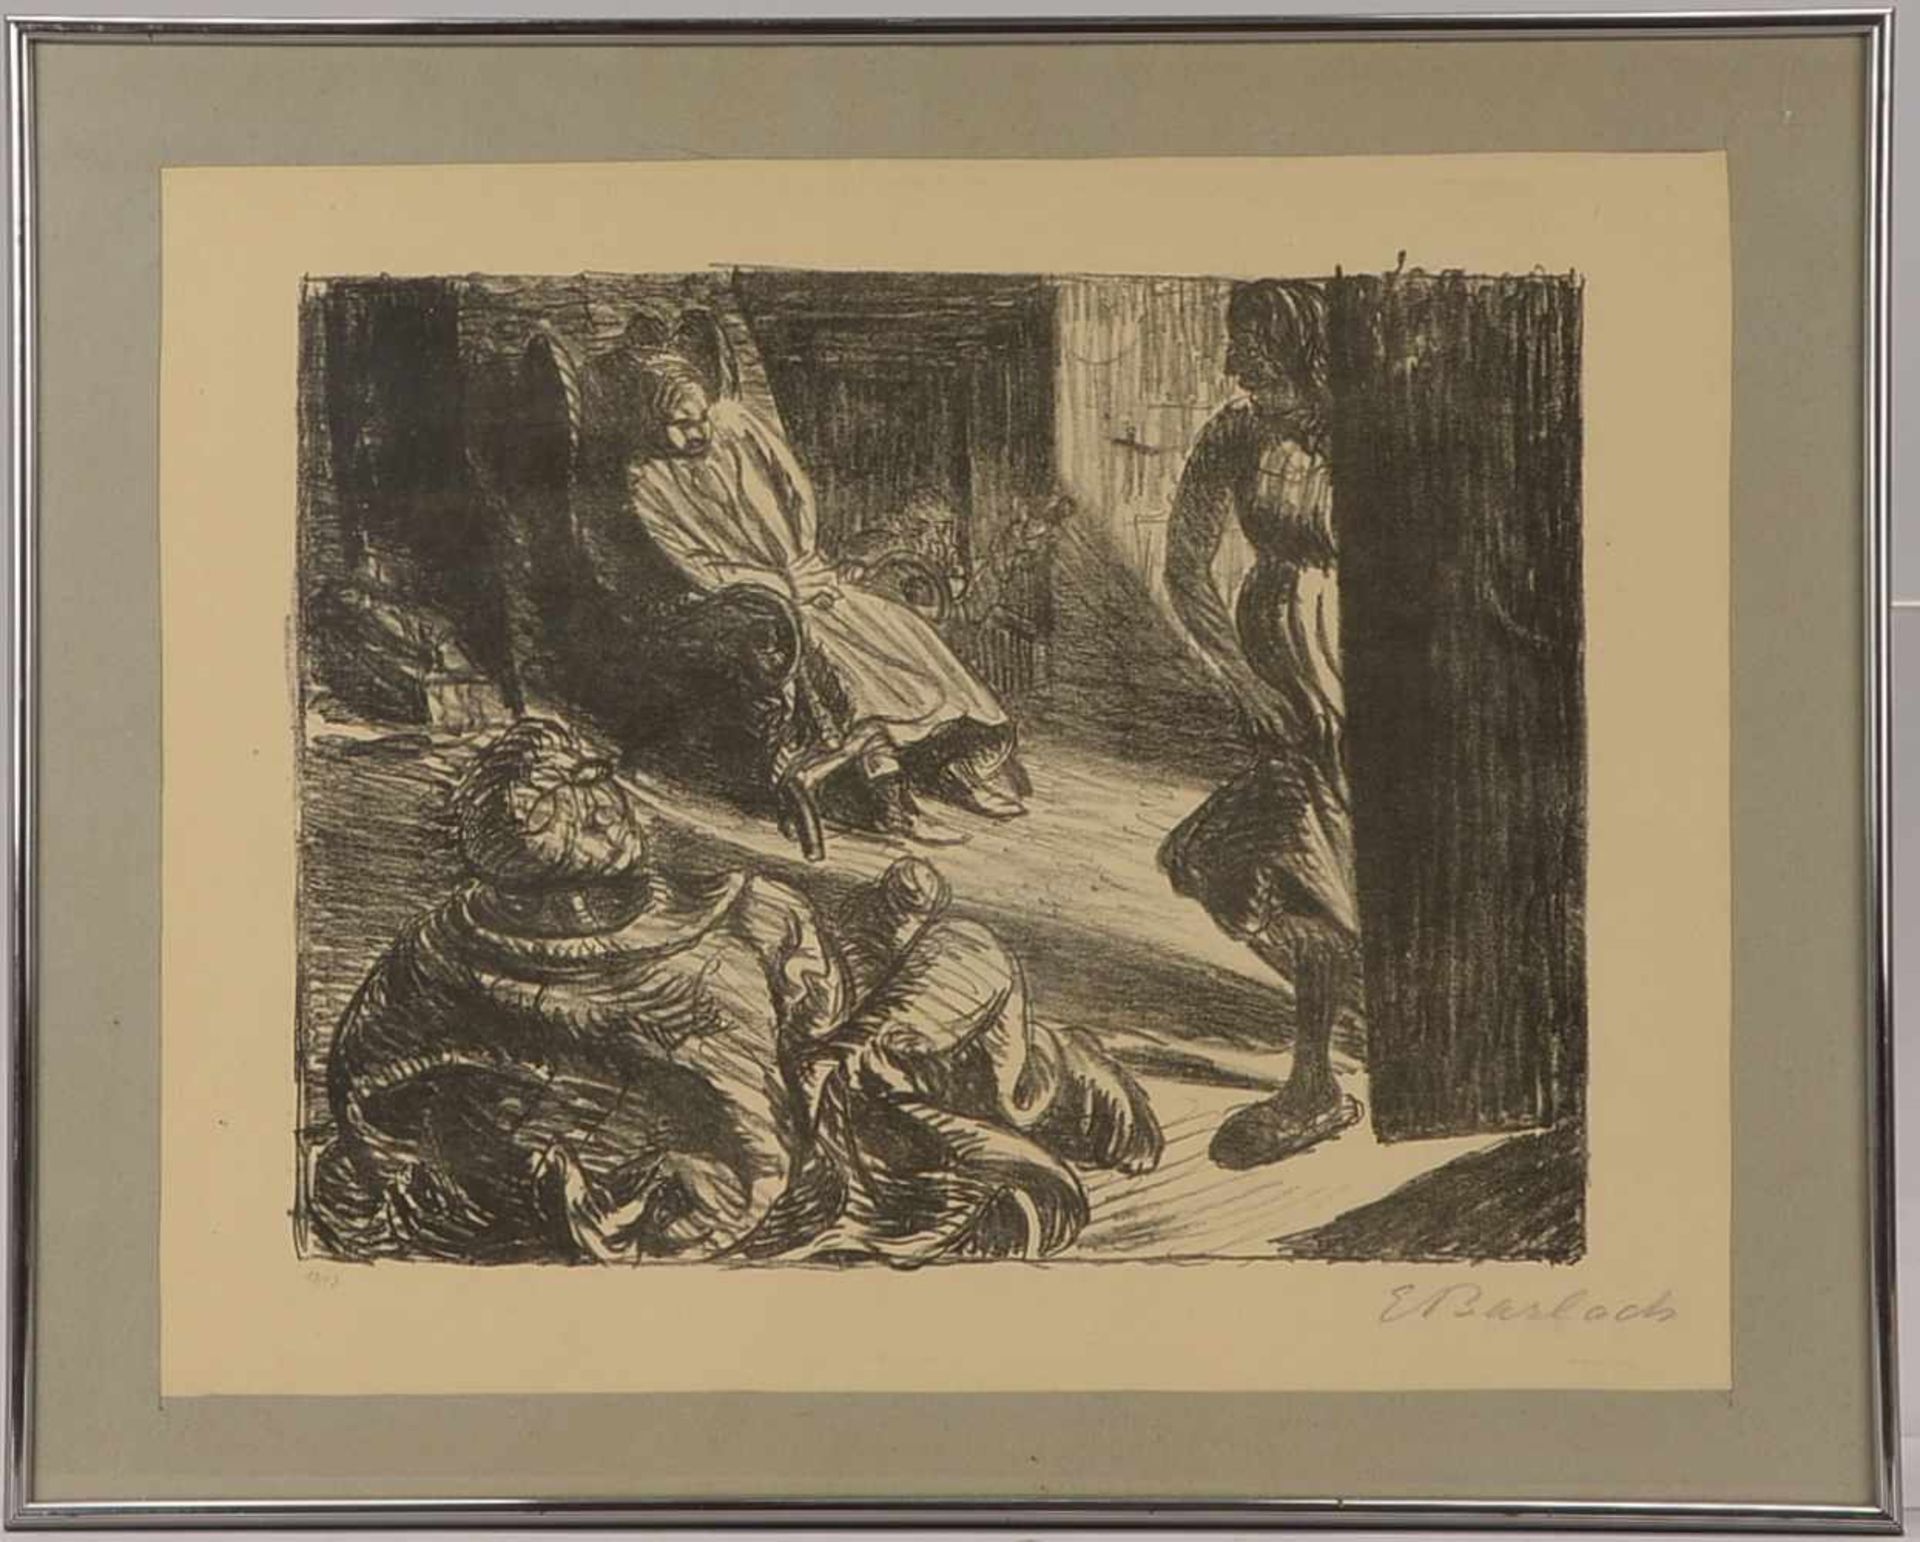 Barlach, Ernst (1870 - 1938), 'Personenszene' (Darstellung zweier Männer und einer Frau),